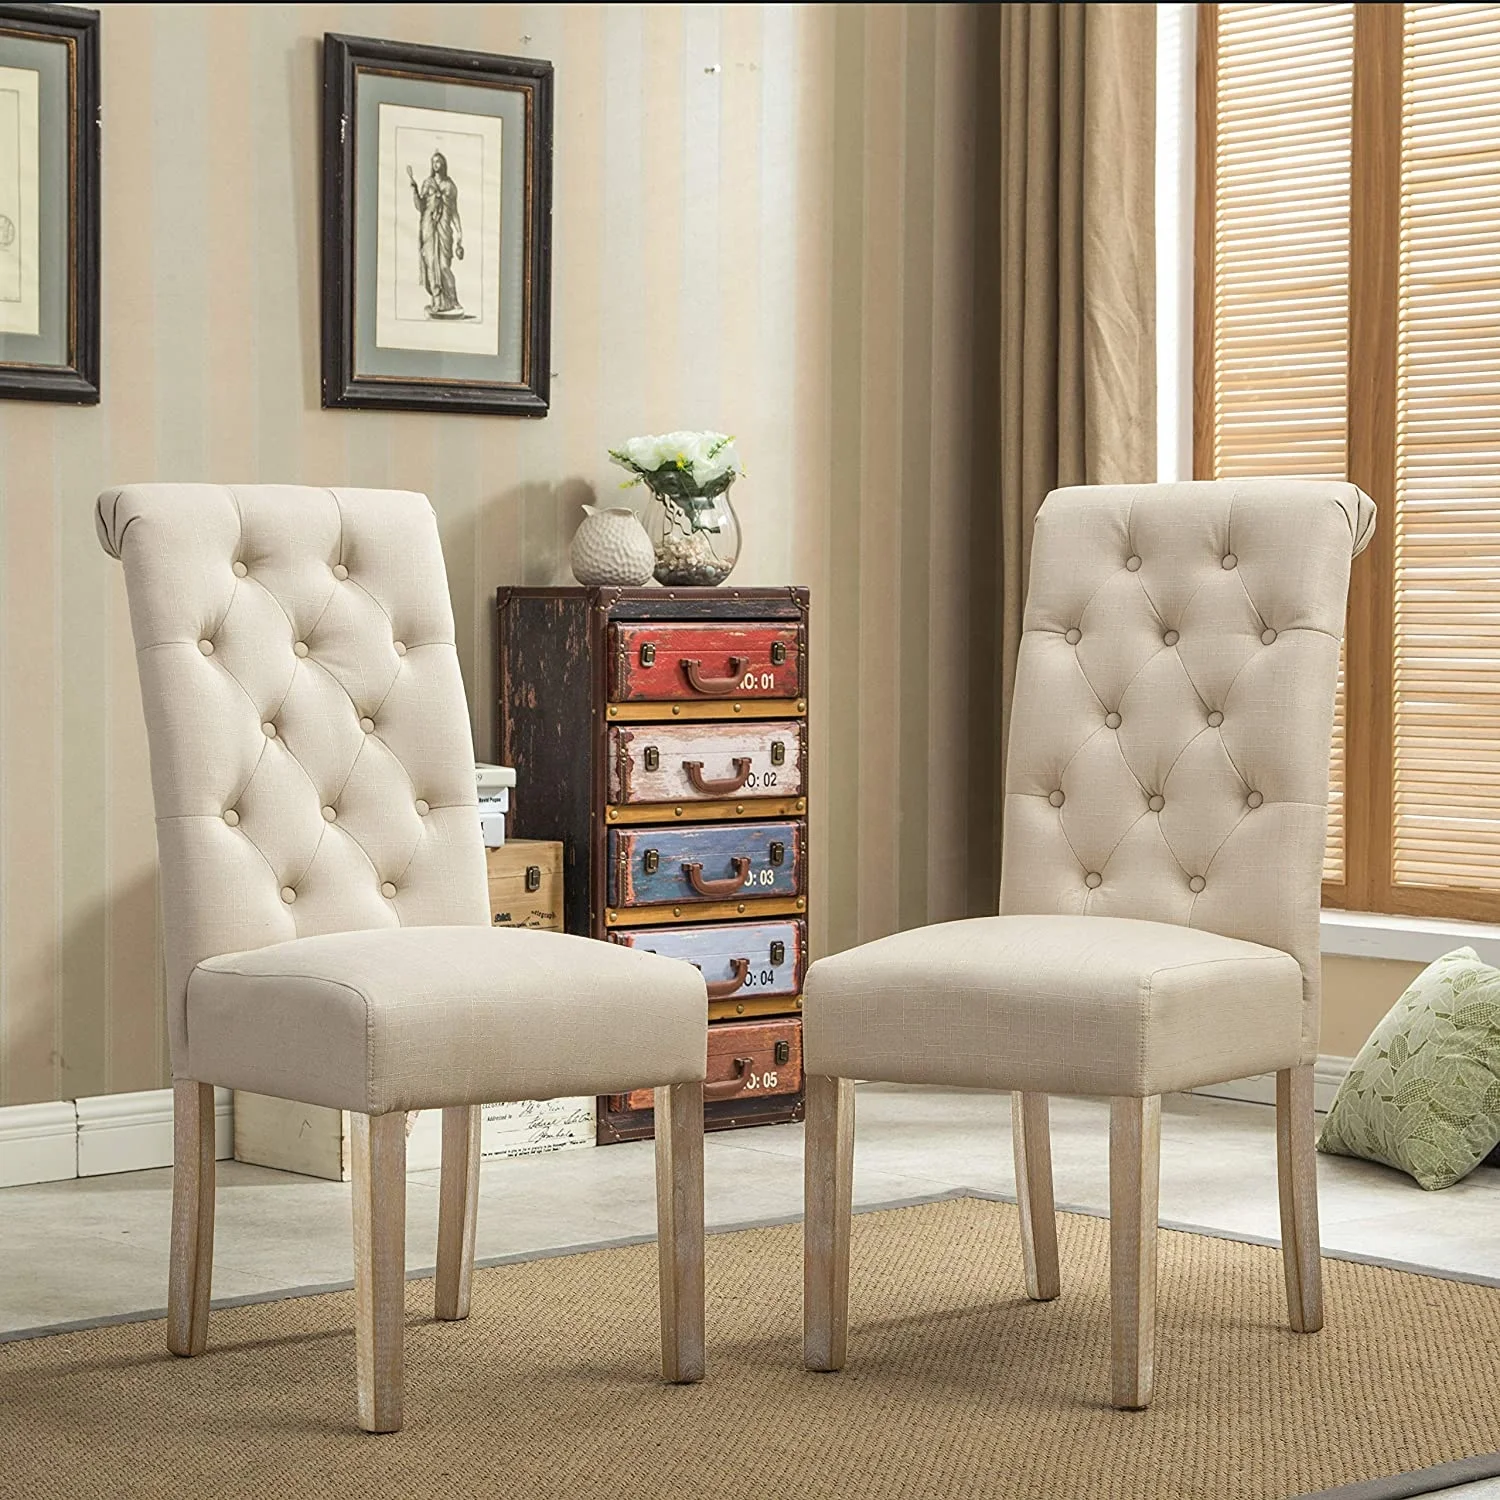 Фото стулья гостиной. Стулья для гостиной. Мягкие стулья для гостиной. Тюля длы гостиной. Шикарные стулья для гостиной.